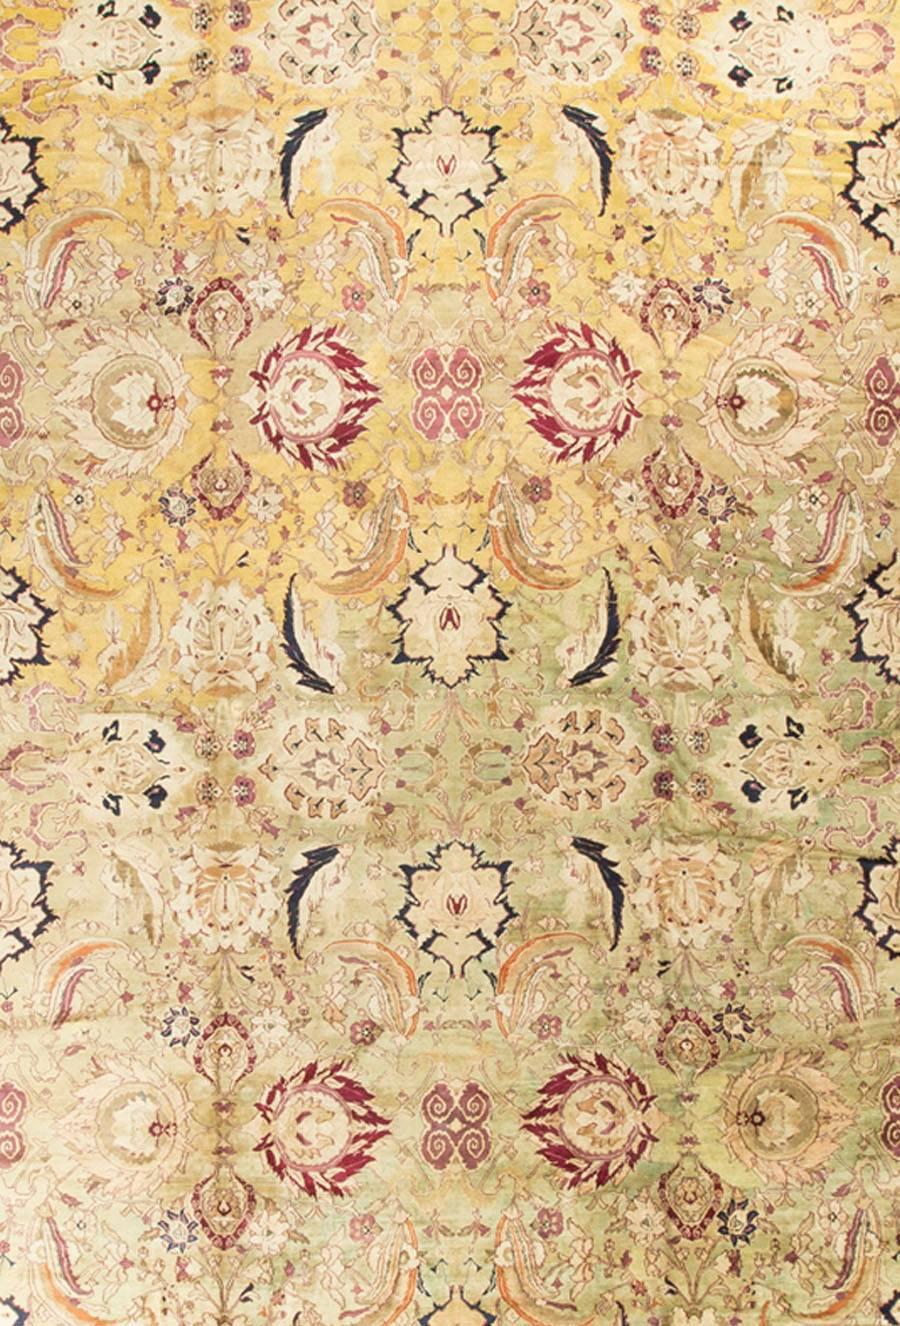 Un tapis indien Agra en laine tissé à la main, datant des années 1940. Un design léger et intéressant et une combinaison de couleurs contribuent à faire de ce tapis une pièce qui apportera légèreté et importance à une pièce.